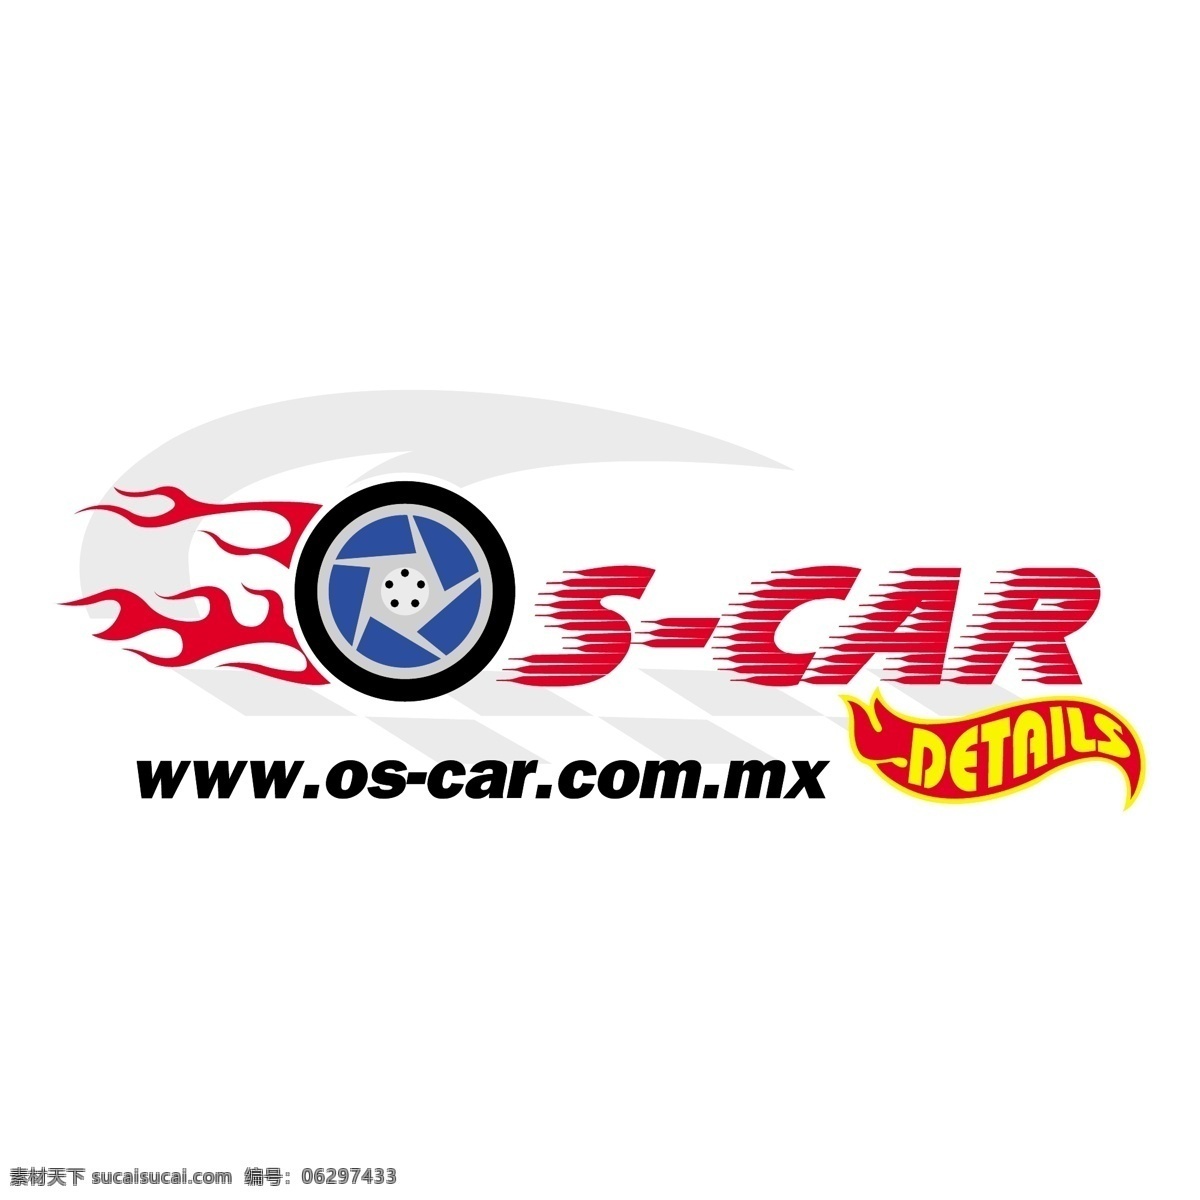 操作系统 汽车 细节 自由 oscar 标识 psd源文件 logo设计